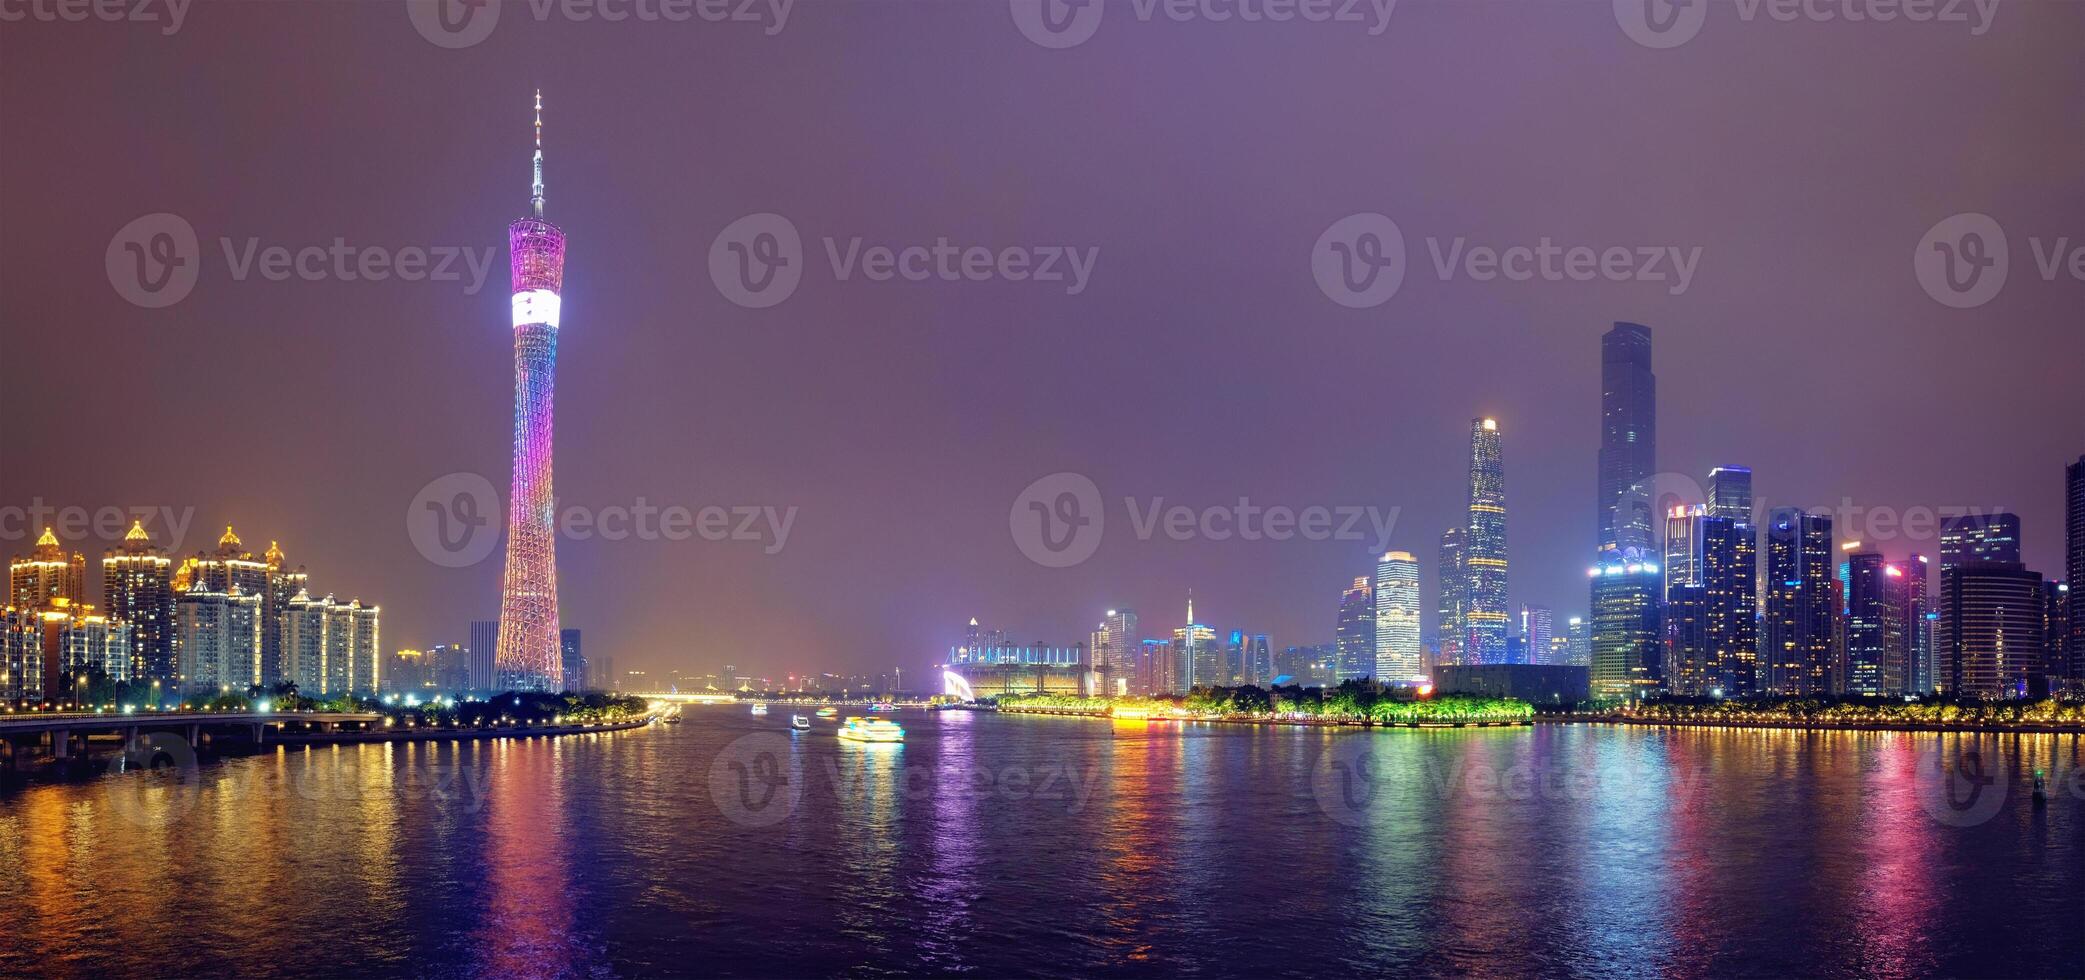 Guangzhou skyline. Guangzhou, China photo